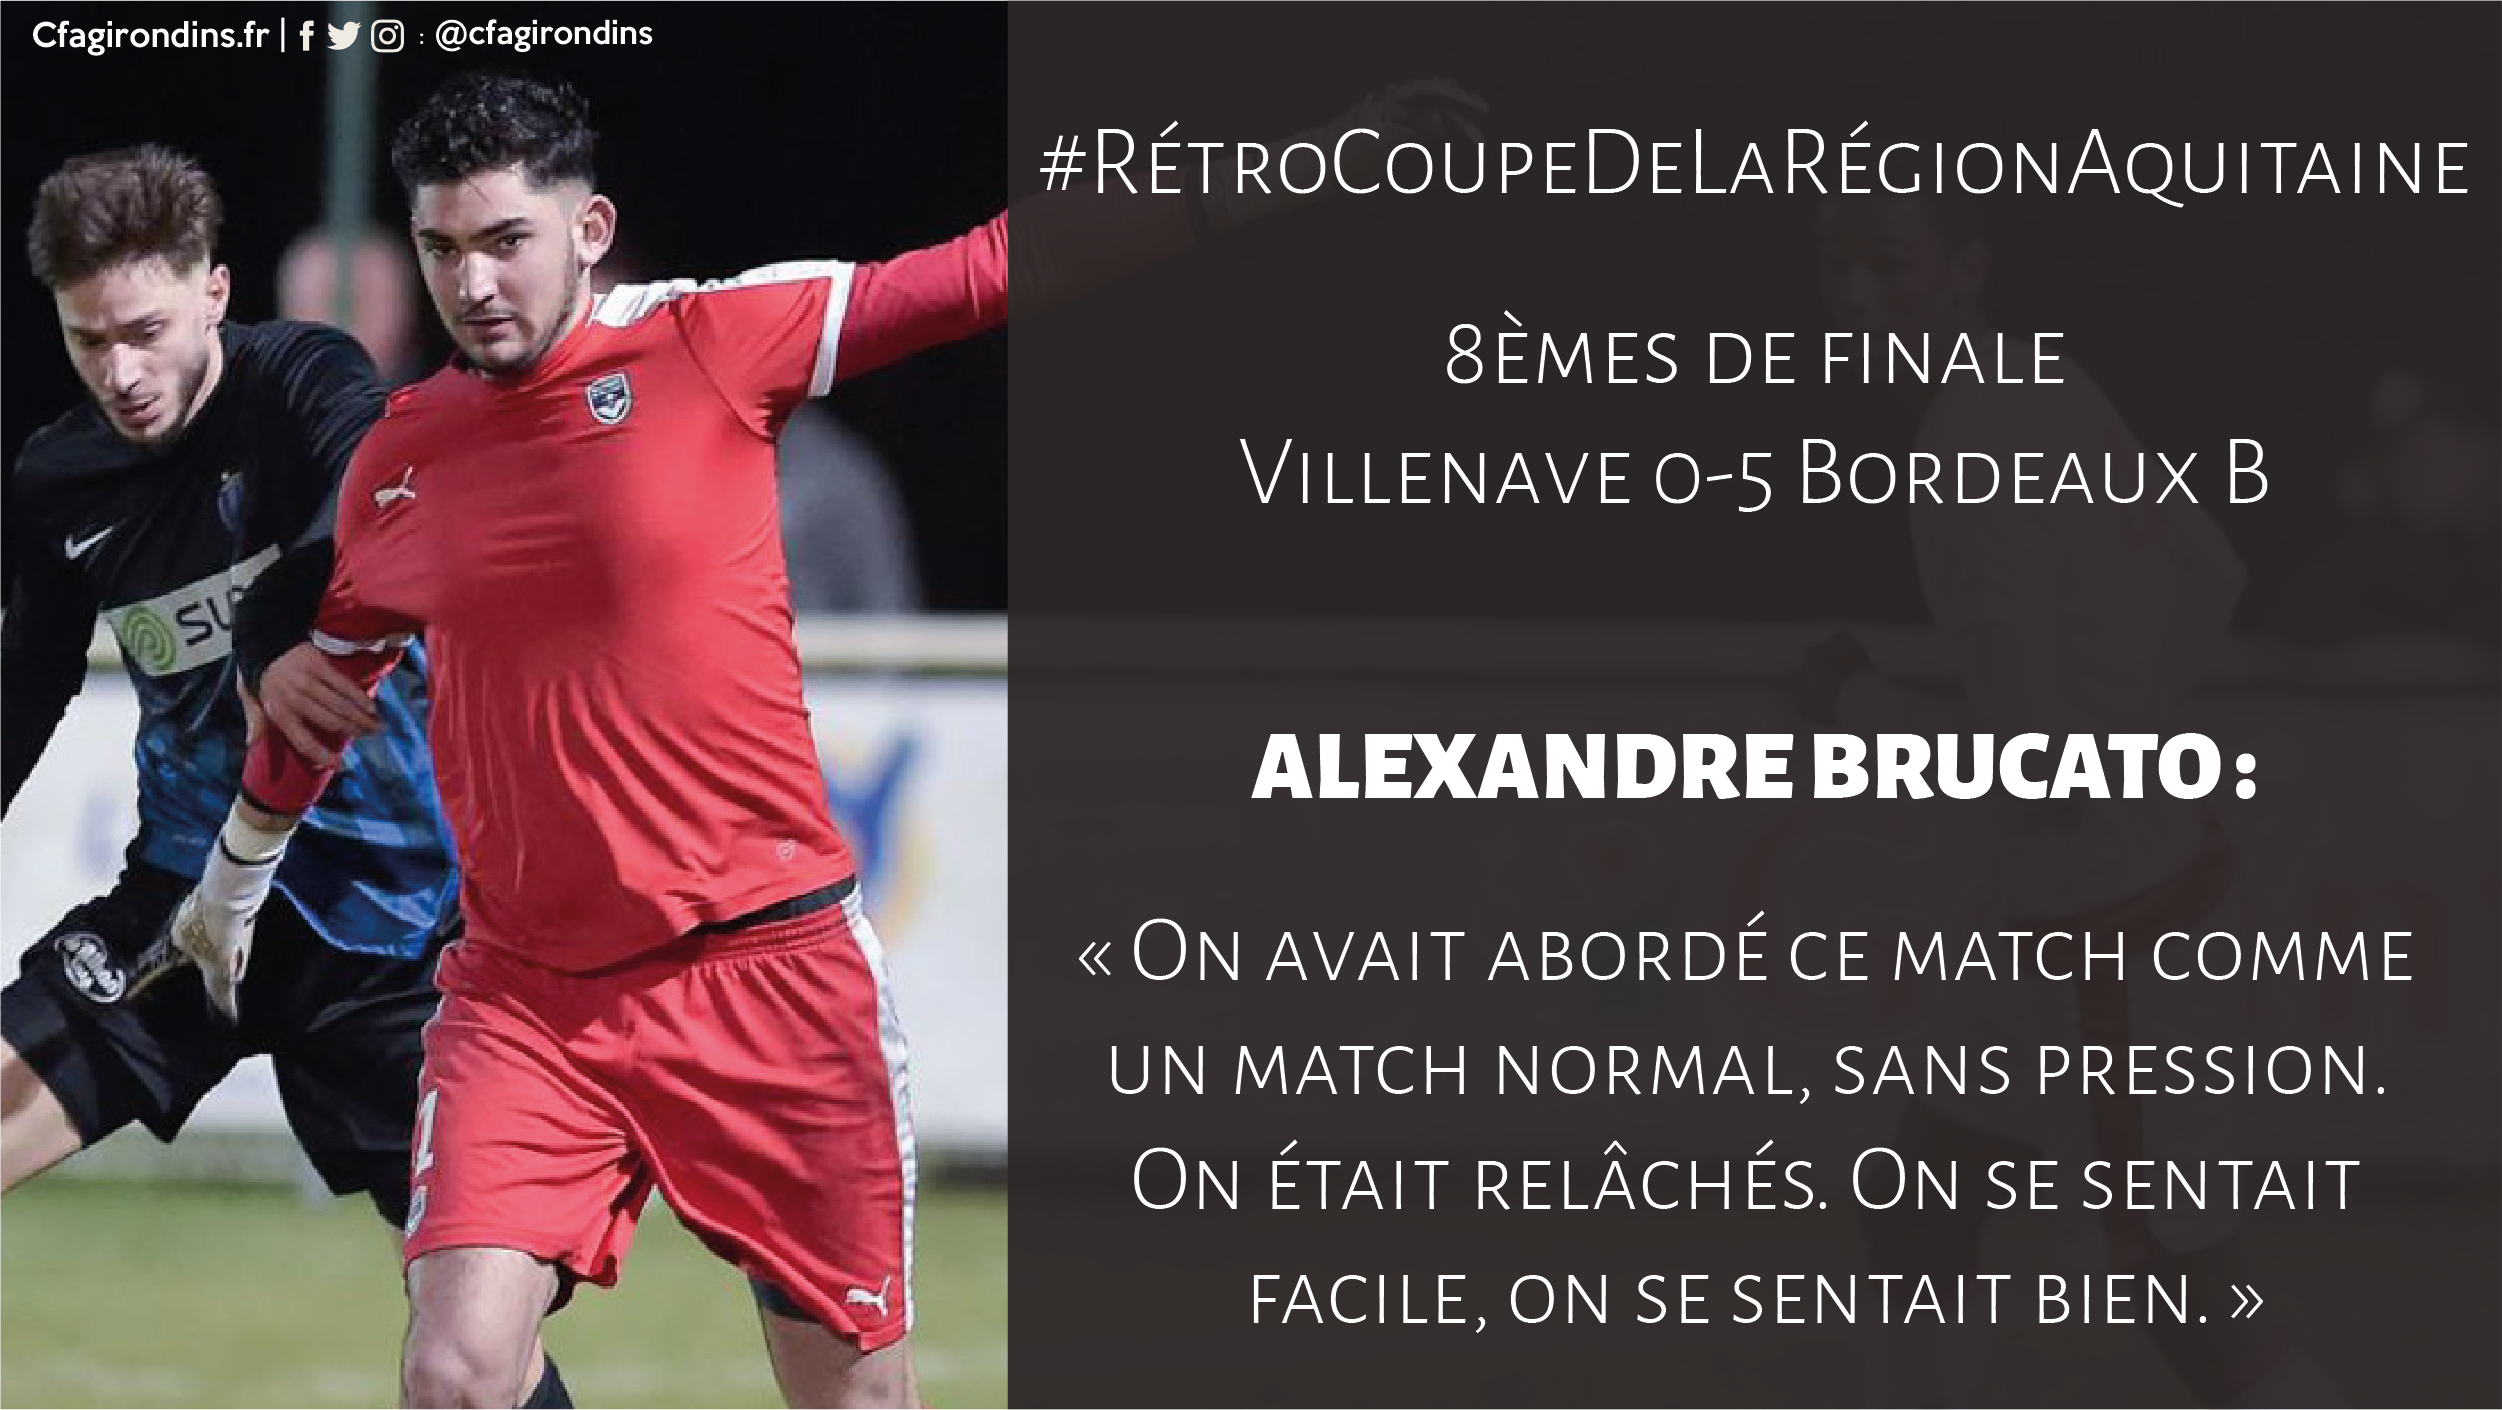 Cfa Girondins : Retour sur les 8èmes de finale avec Alexandre Brucato - Formation Girondins 